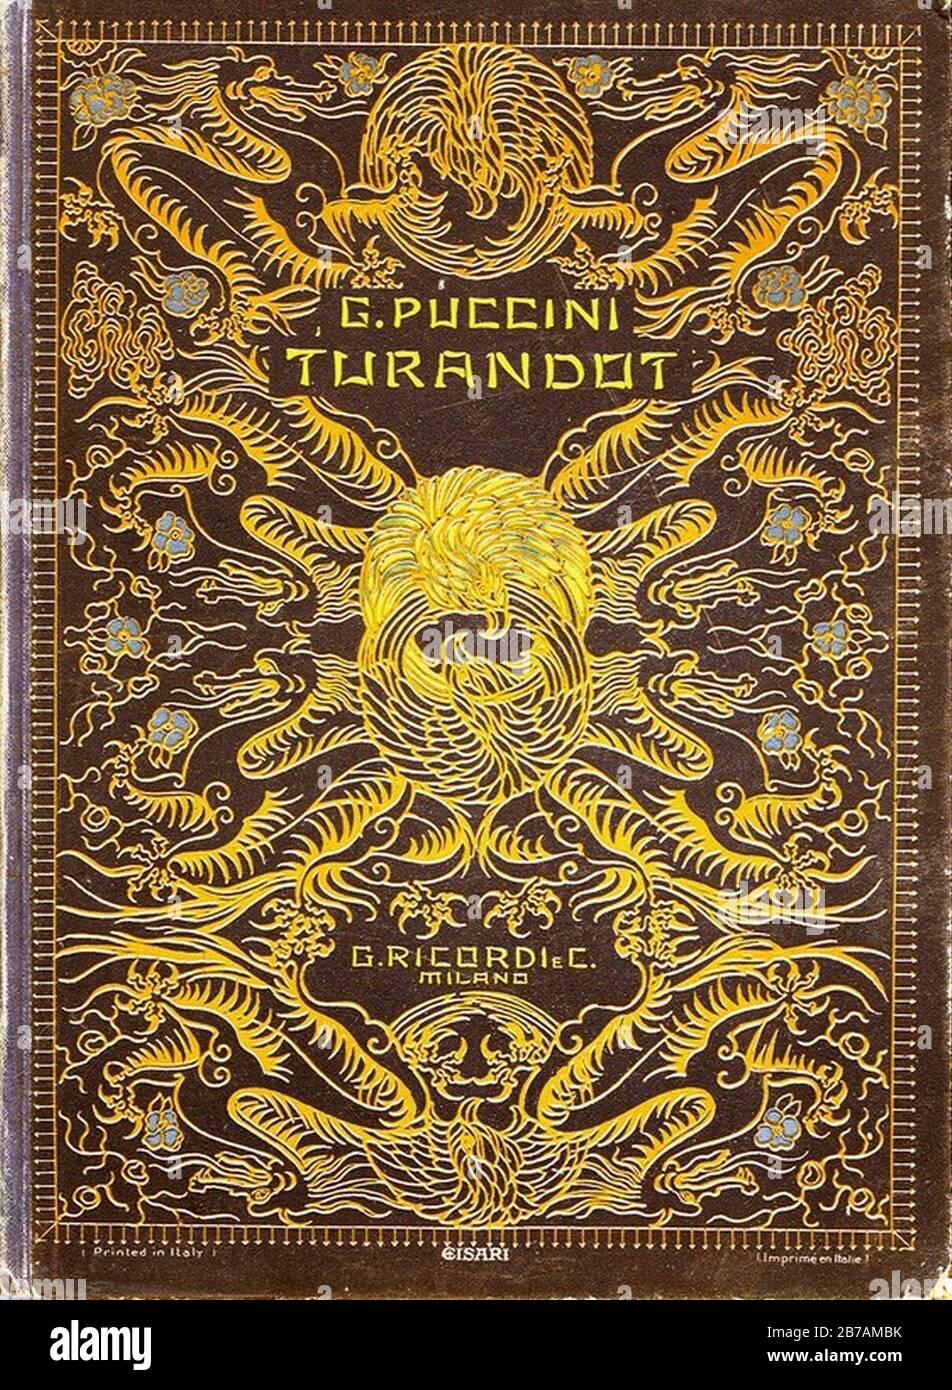 Giacomo Puccini, Turandot, 1926 Stock Photo - Alamy